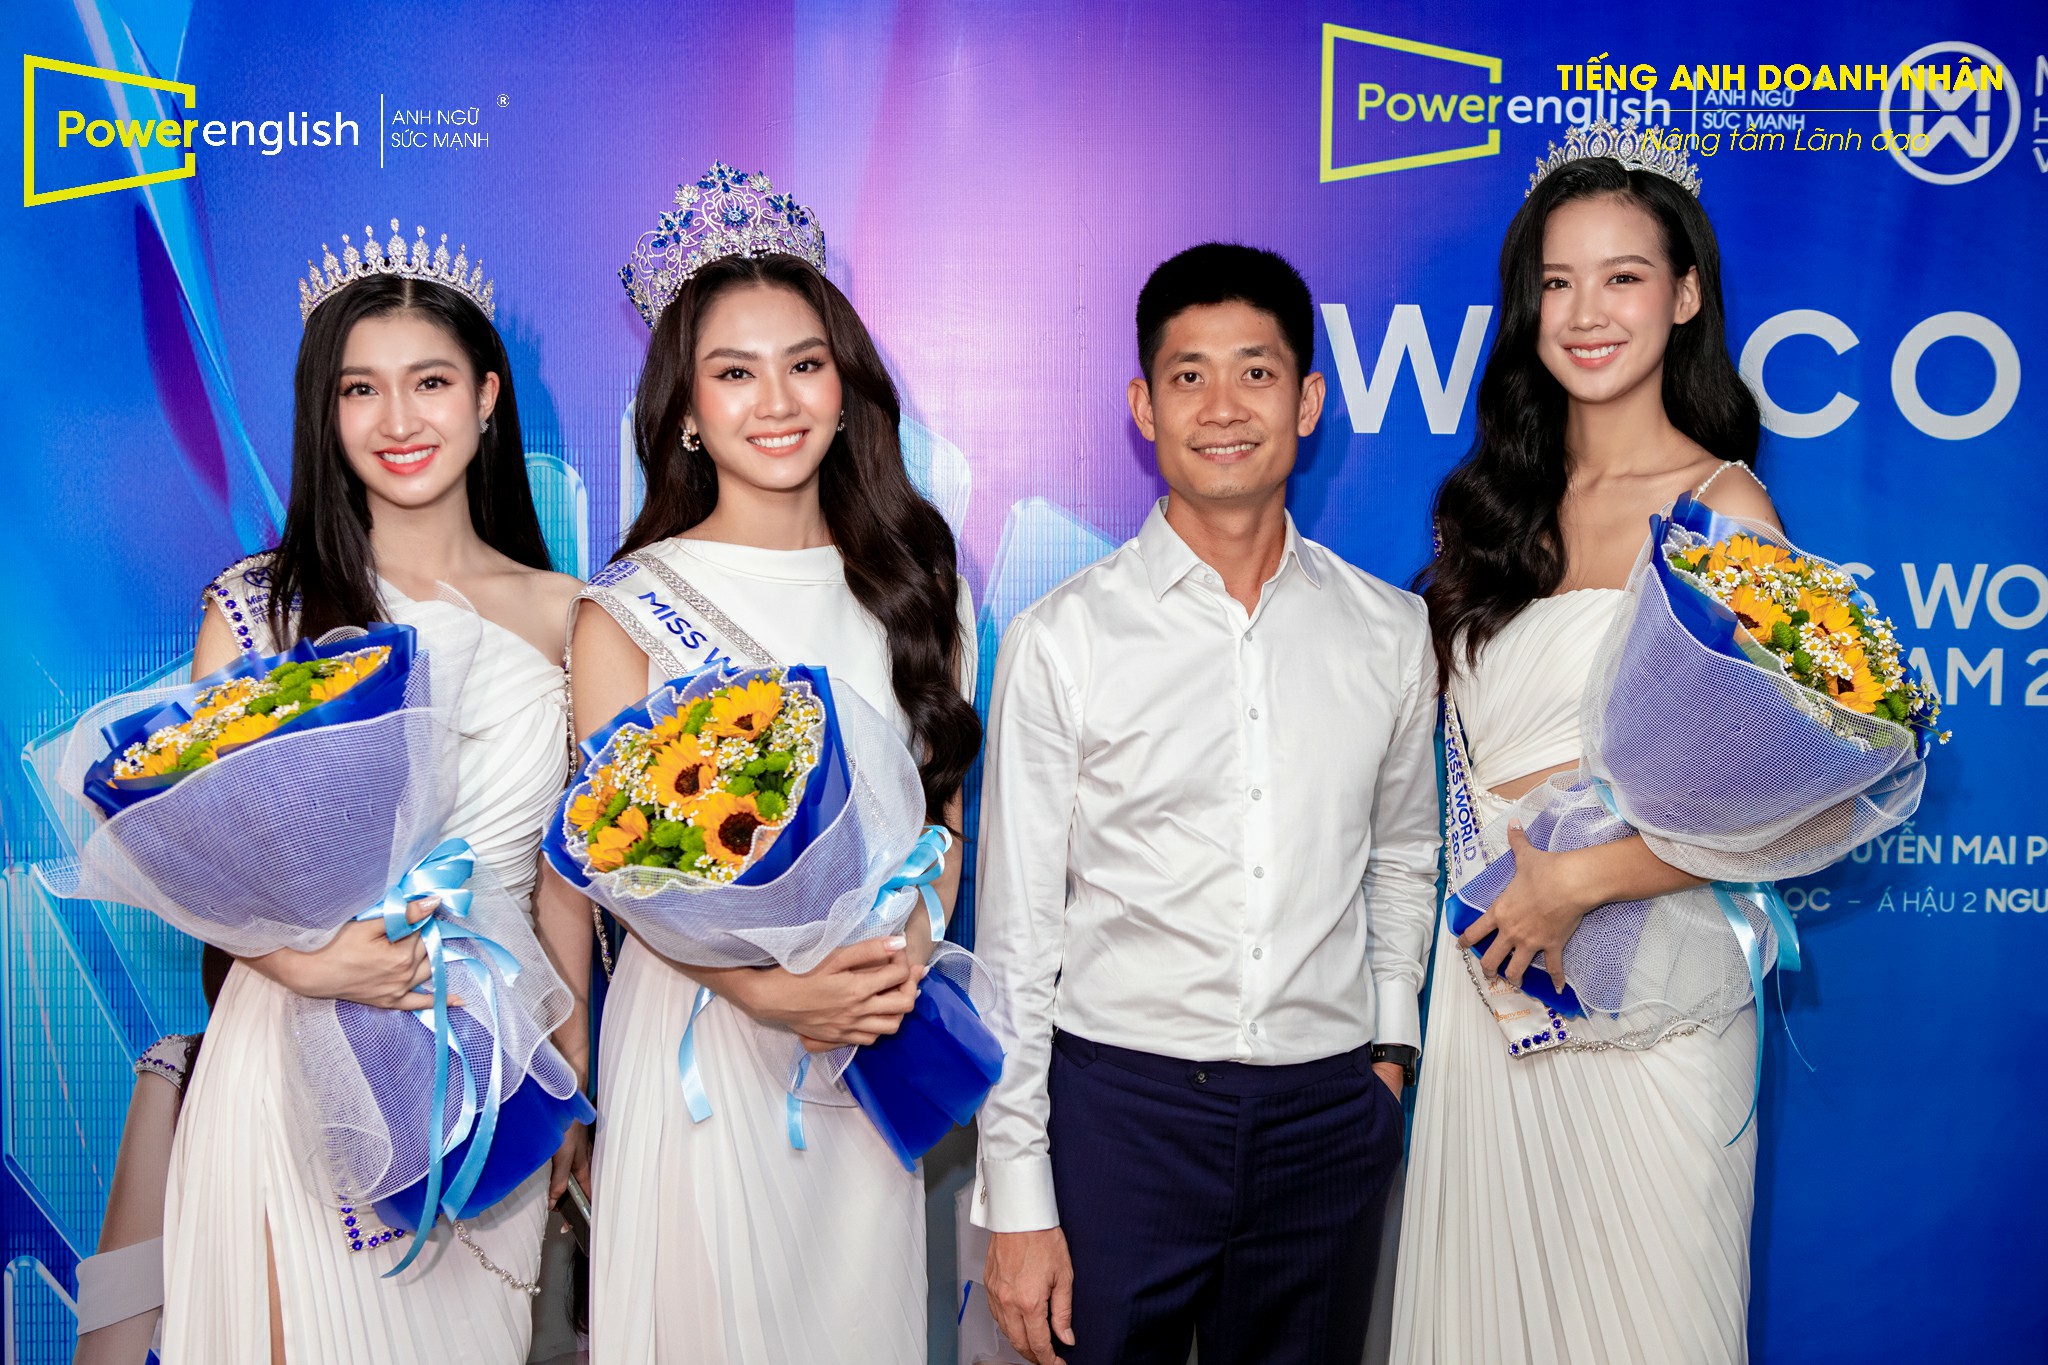 Top 3 Miss World Vietnam 2022 đến thăm và cảm ơn Power English